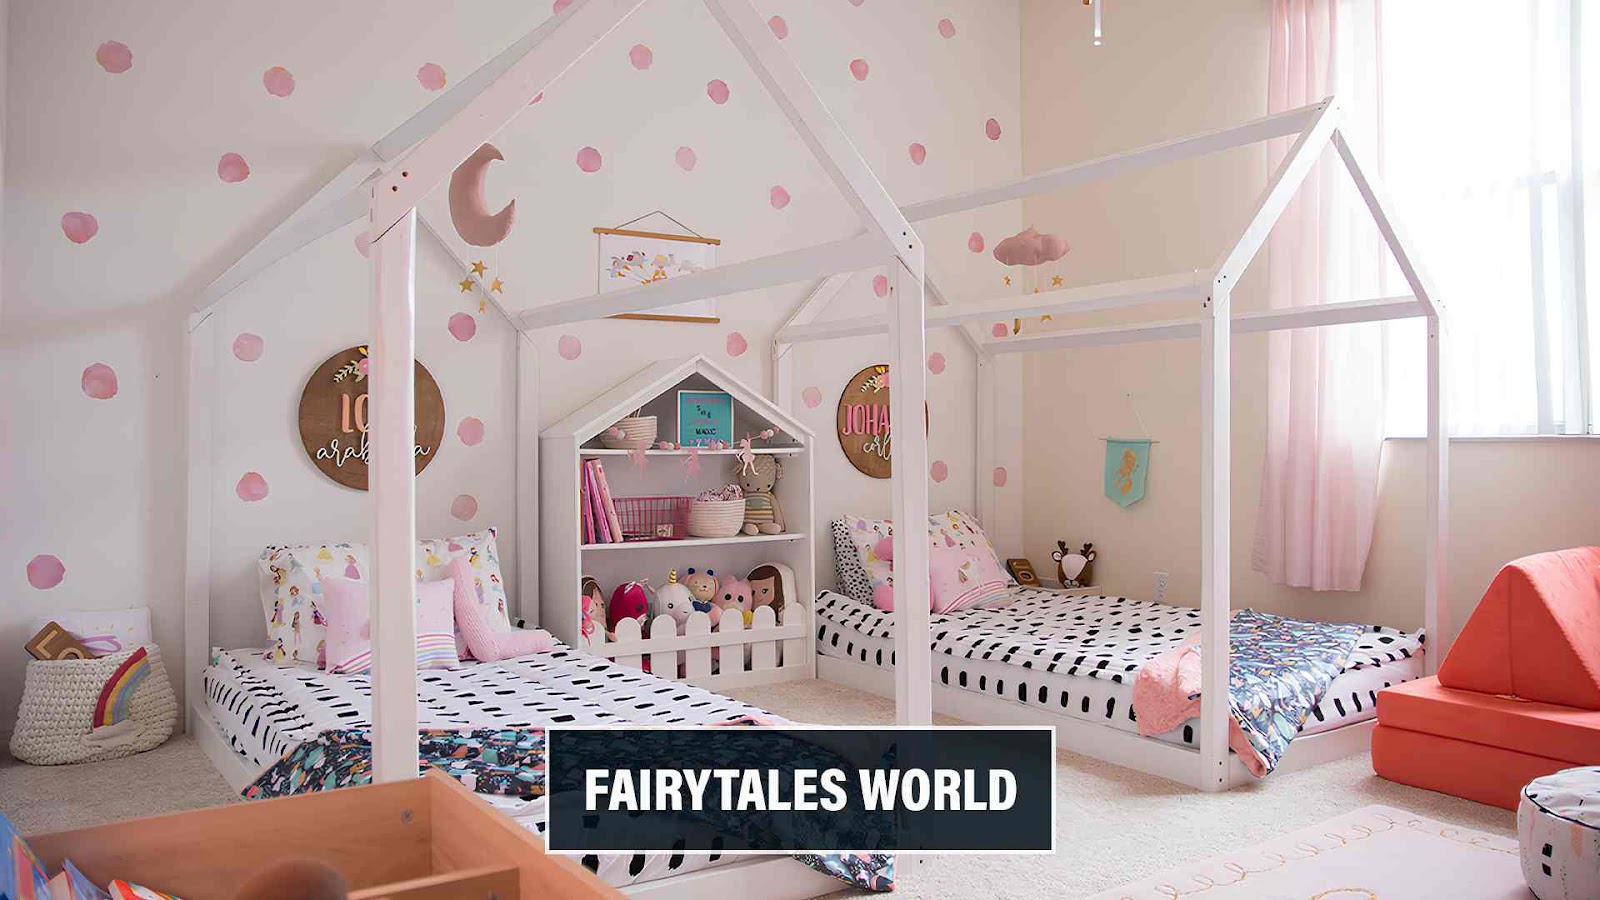 FairyTales World